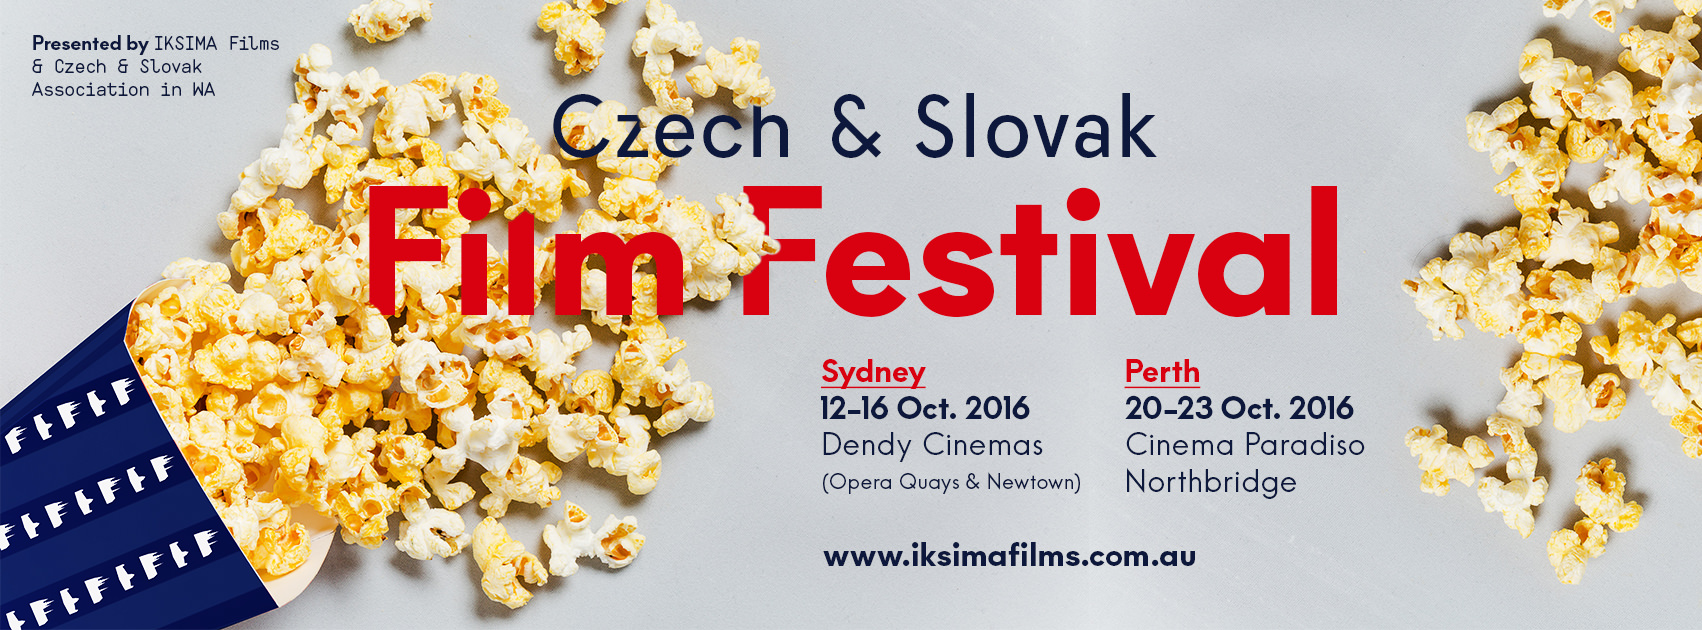 Czech & Slovak Film Festival 2016 Sydney